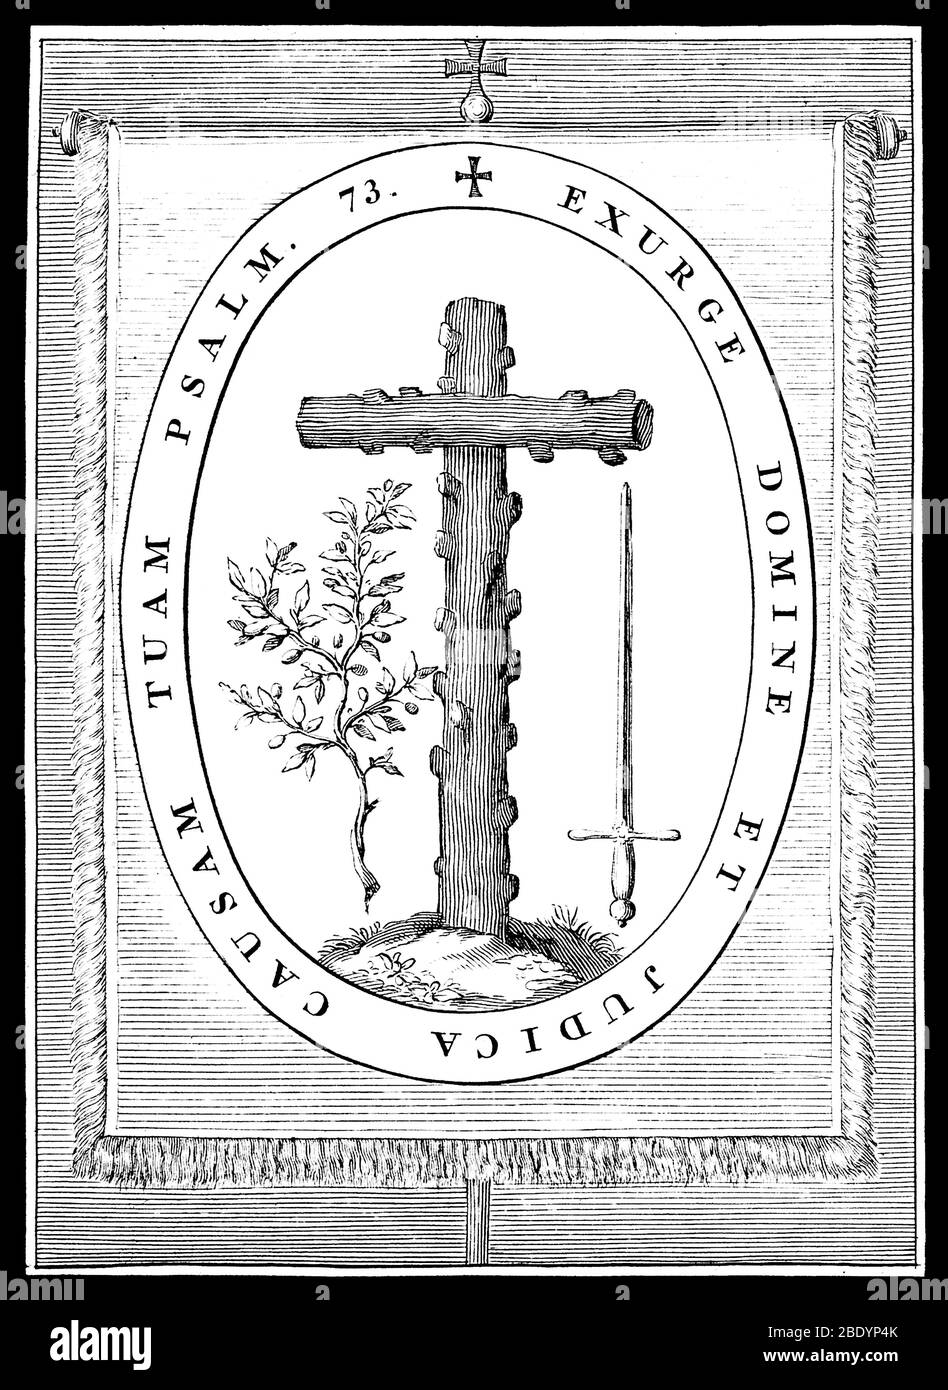 Bannière de l'Inquisition espagnole, 1722 Banque D'Images